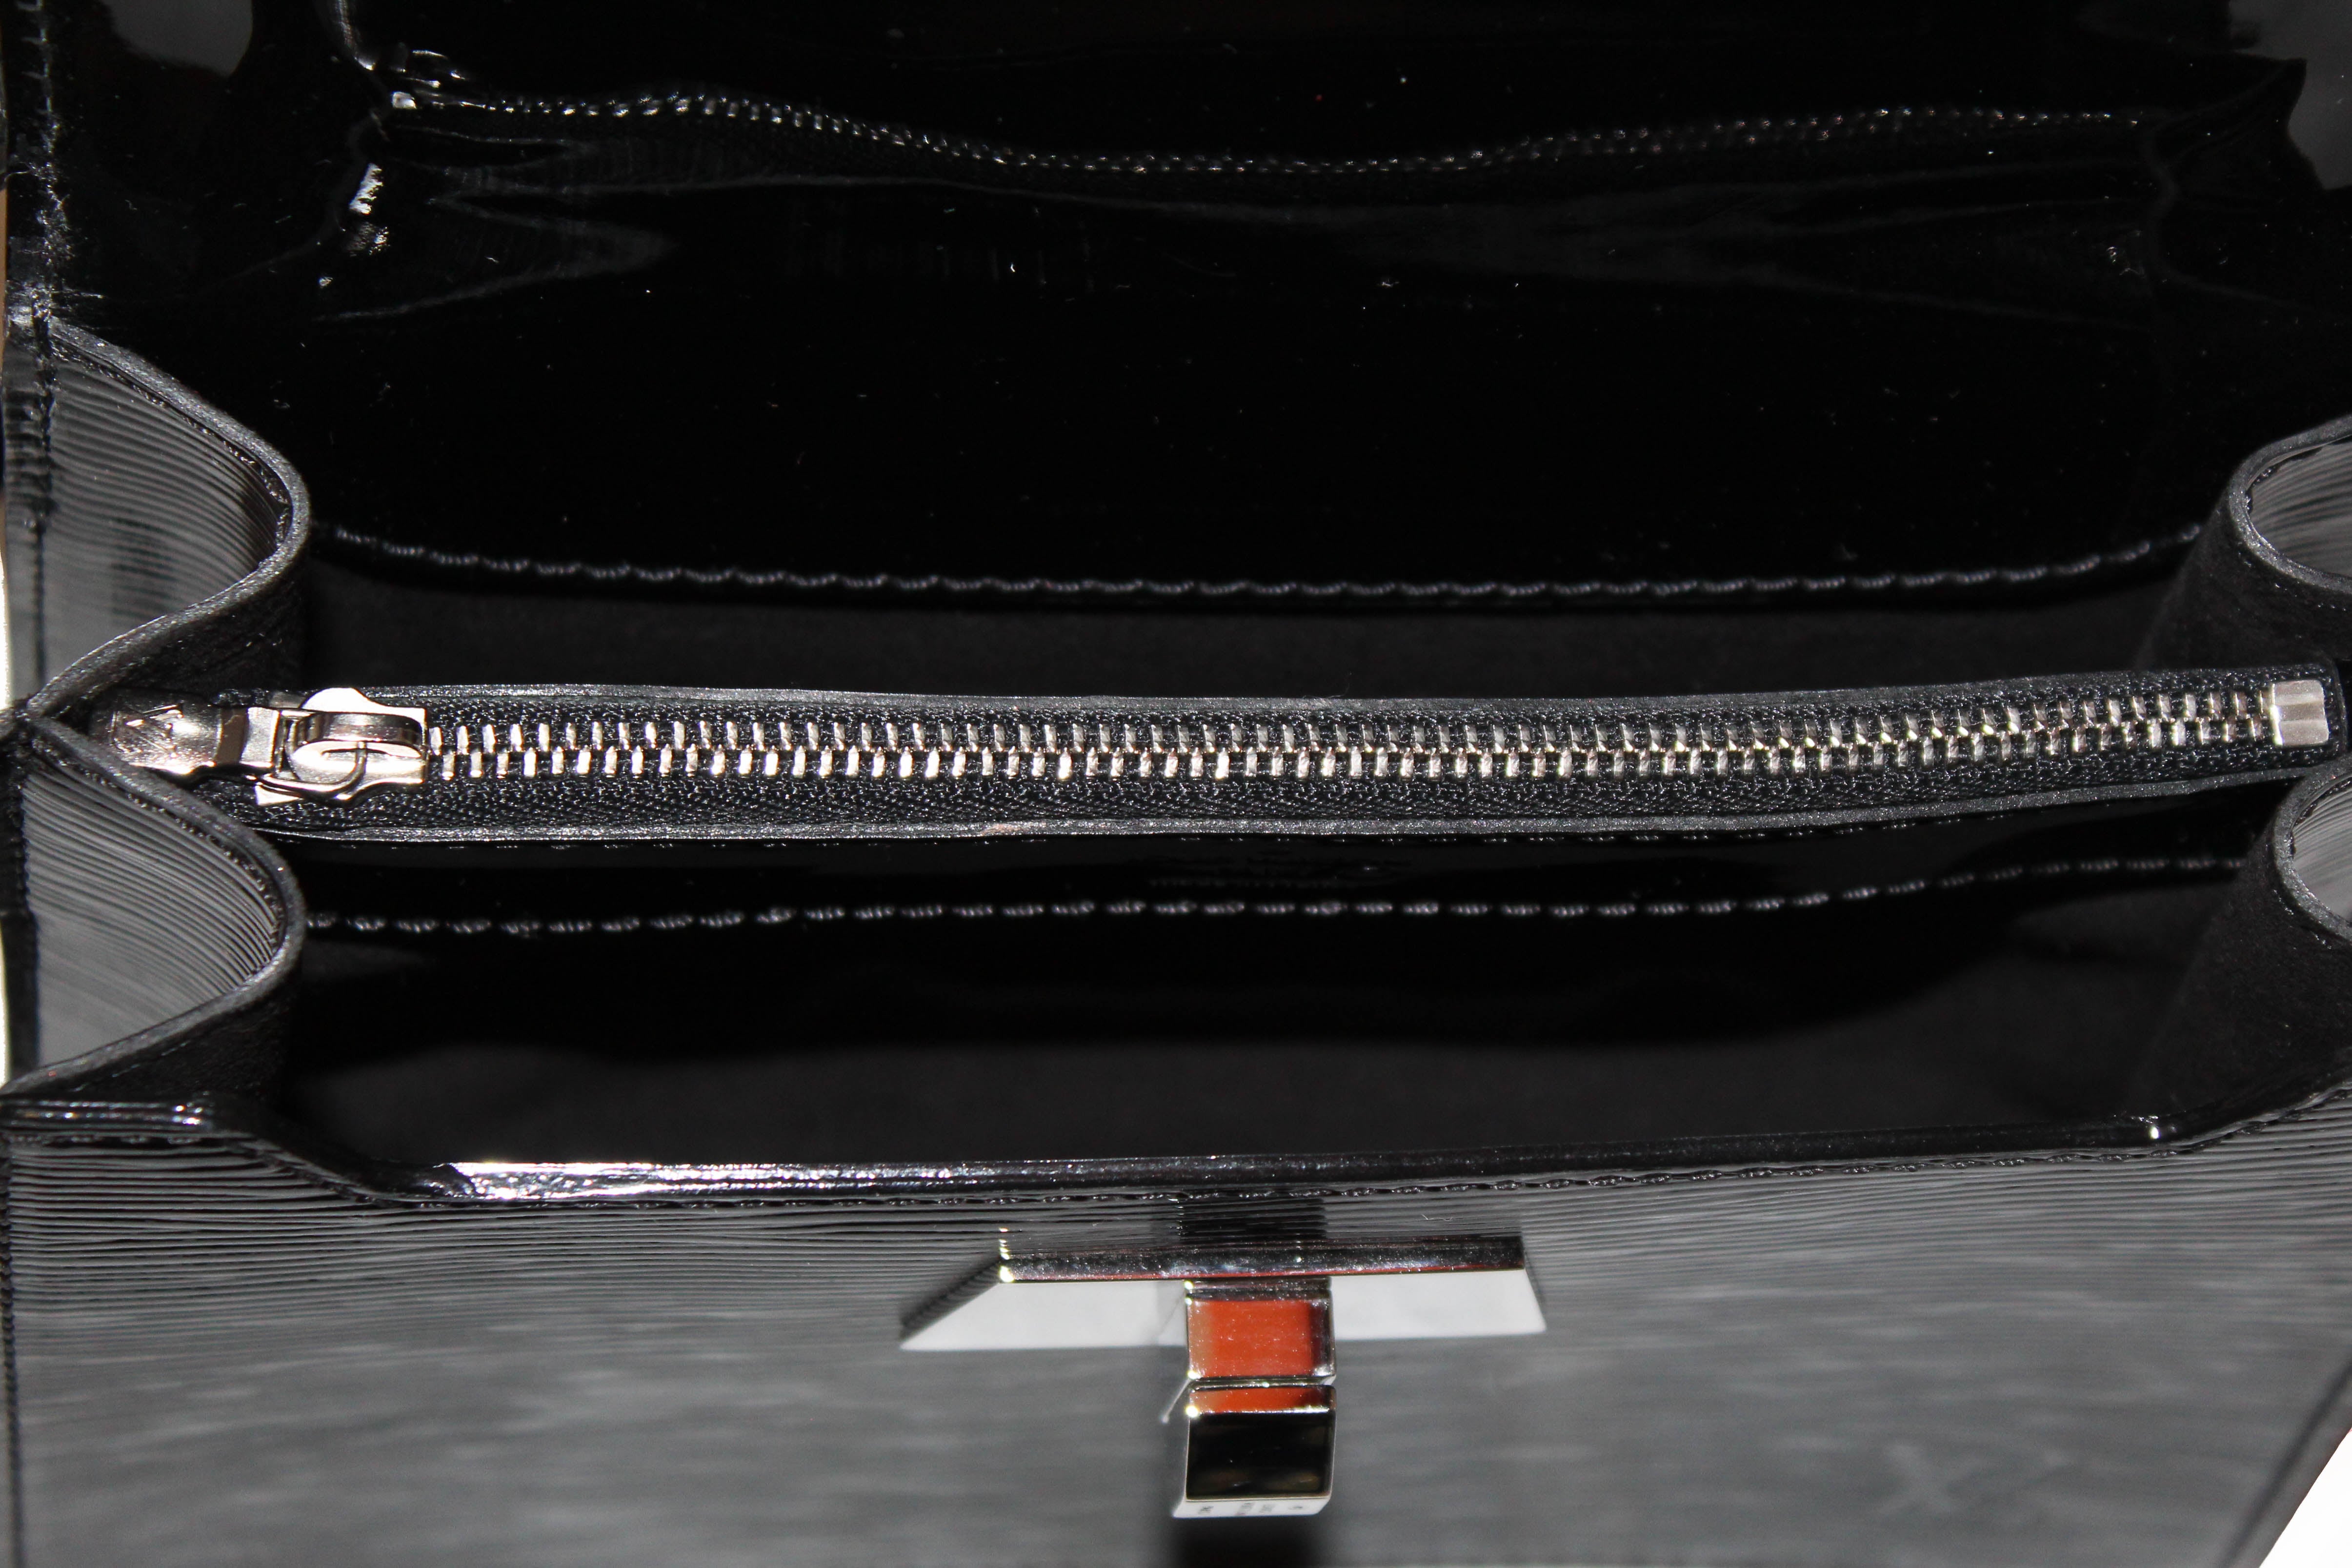 Louis Vuitton, Bags, Louis Vuitton Black Croc Leather Pocket Organiser